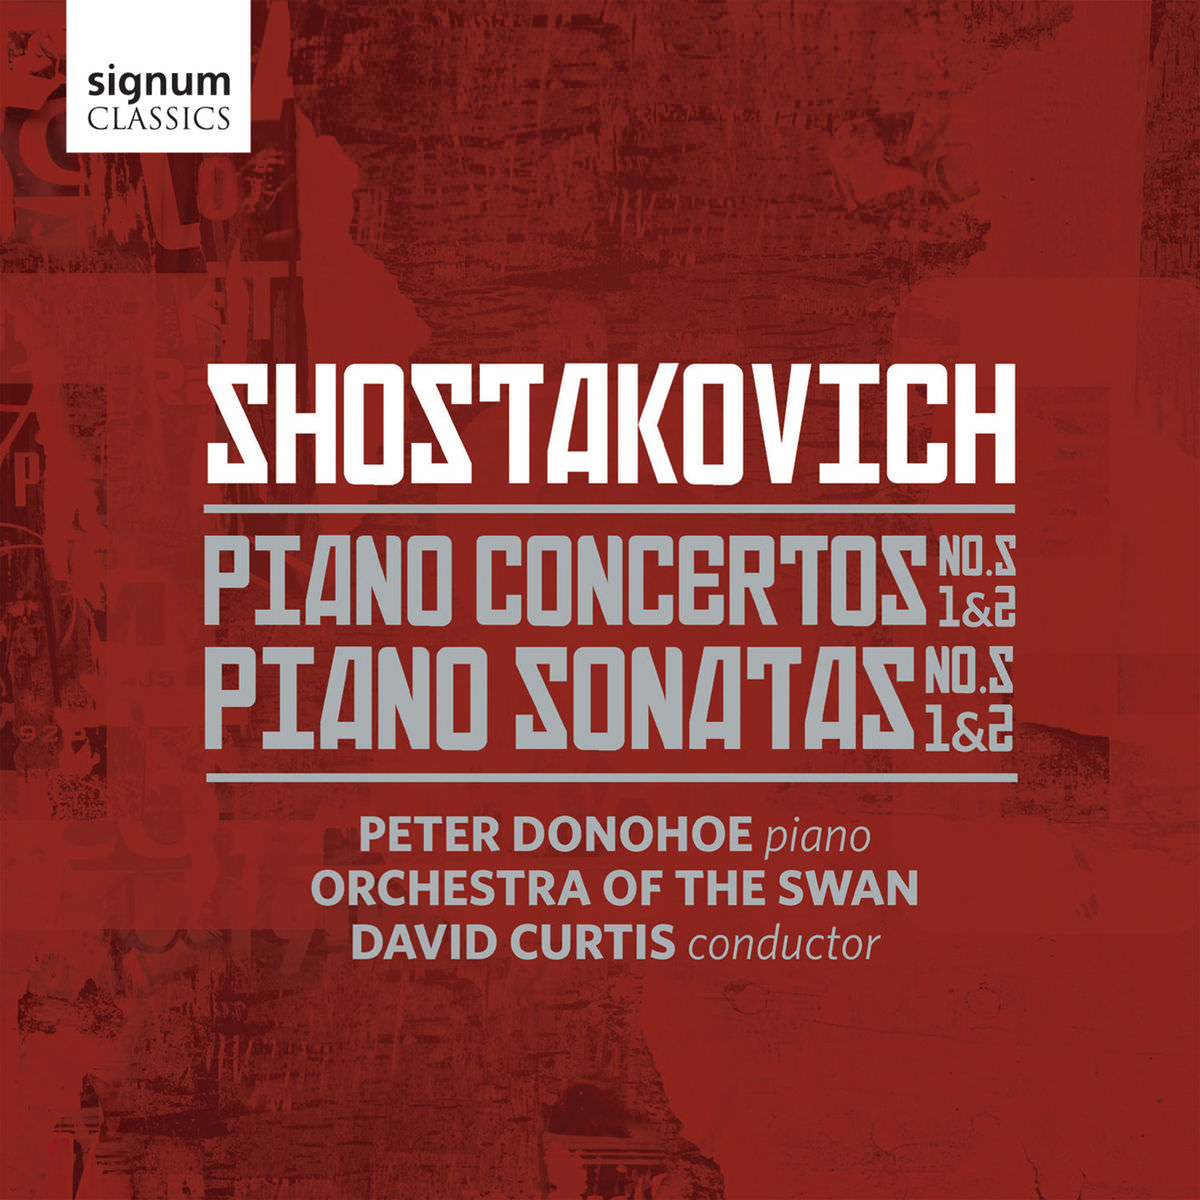 Peter Donohoe - Shostakovich: Piano Sonatas Nos. 1-2 & Piano Concertos Nos. 1-2 (2017) [Qobuz FLAC 24bit/96kHz]